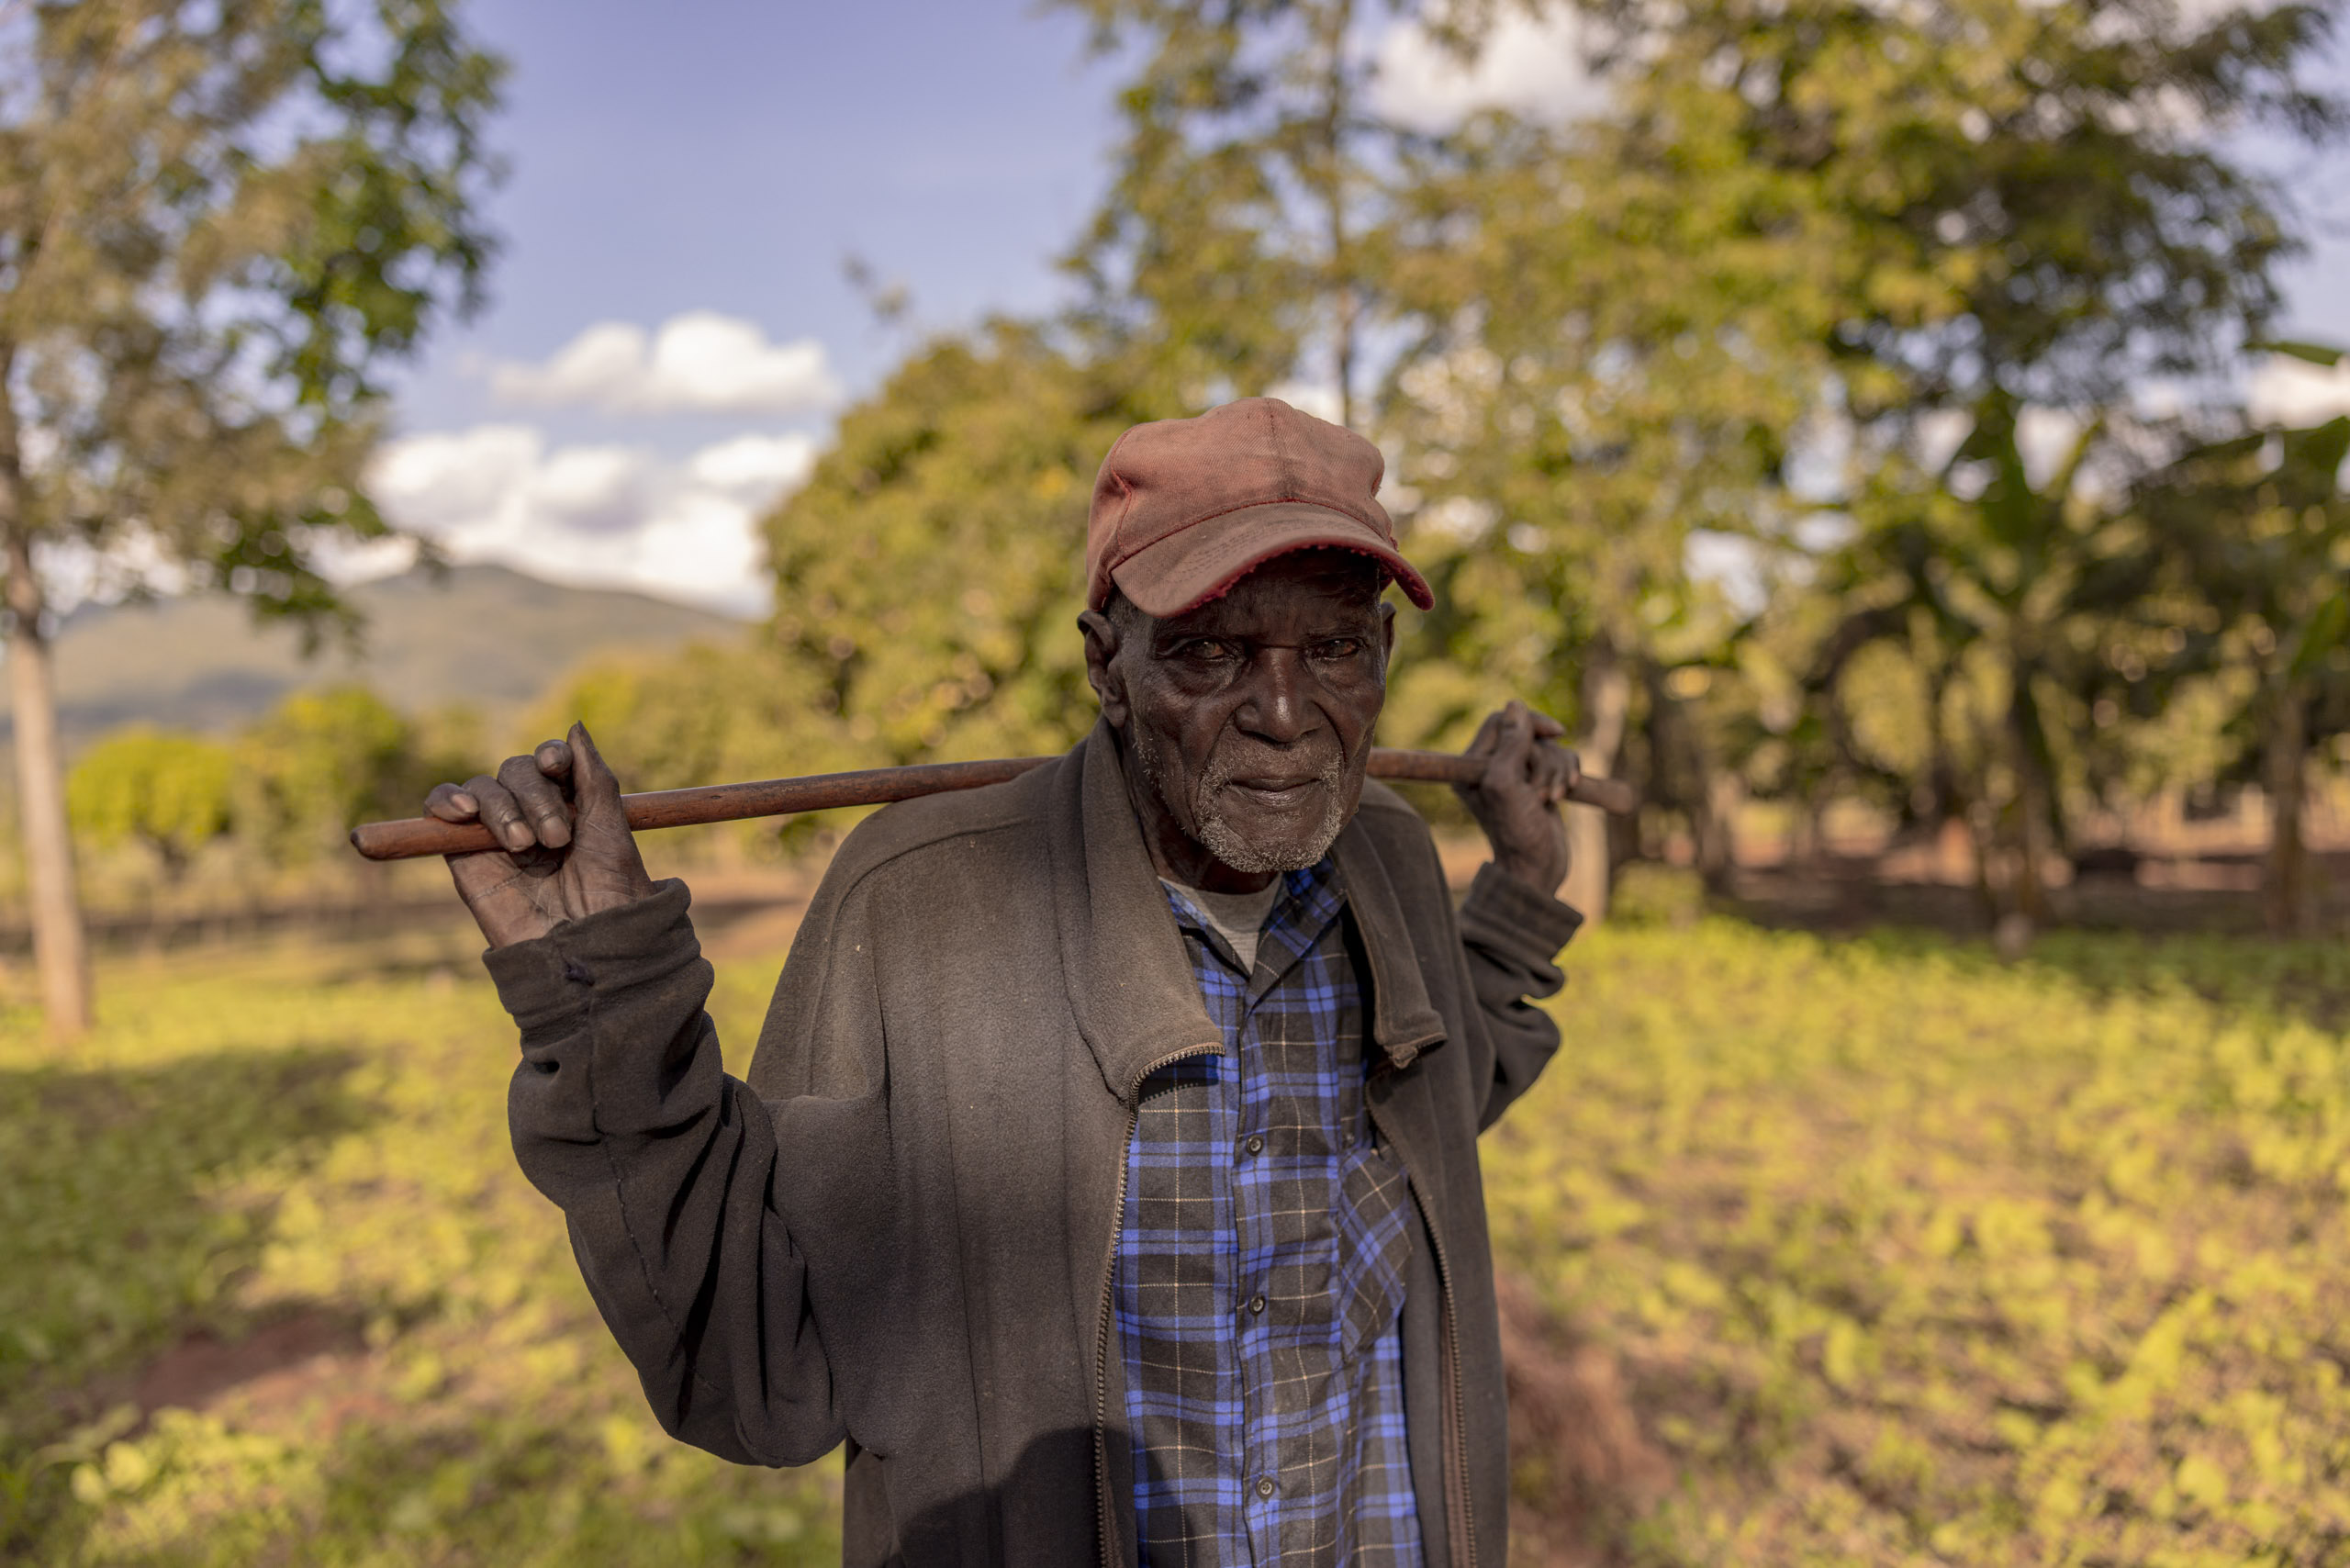 Ein älterer Mann mit wettergegerbtem Gesicht, einer roten Mütze und einer dunklen Jacke trägt eine Hacke über der Schulter in einer ländlichen Landschaft mit Bäumen und Hügeln im Hintergrund. © Fotografie Tomas Rodriguez